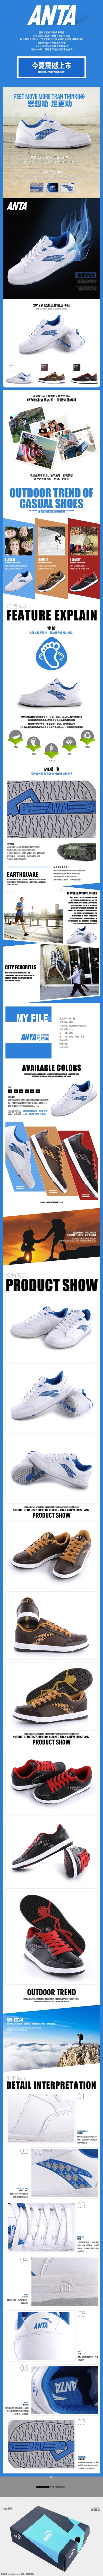 淘宝 运动鞋 描述 模版 描述模版 白色